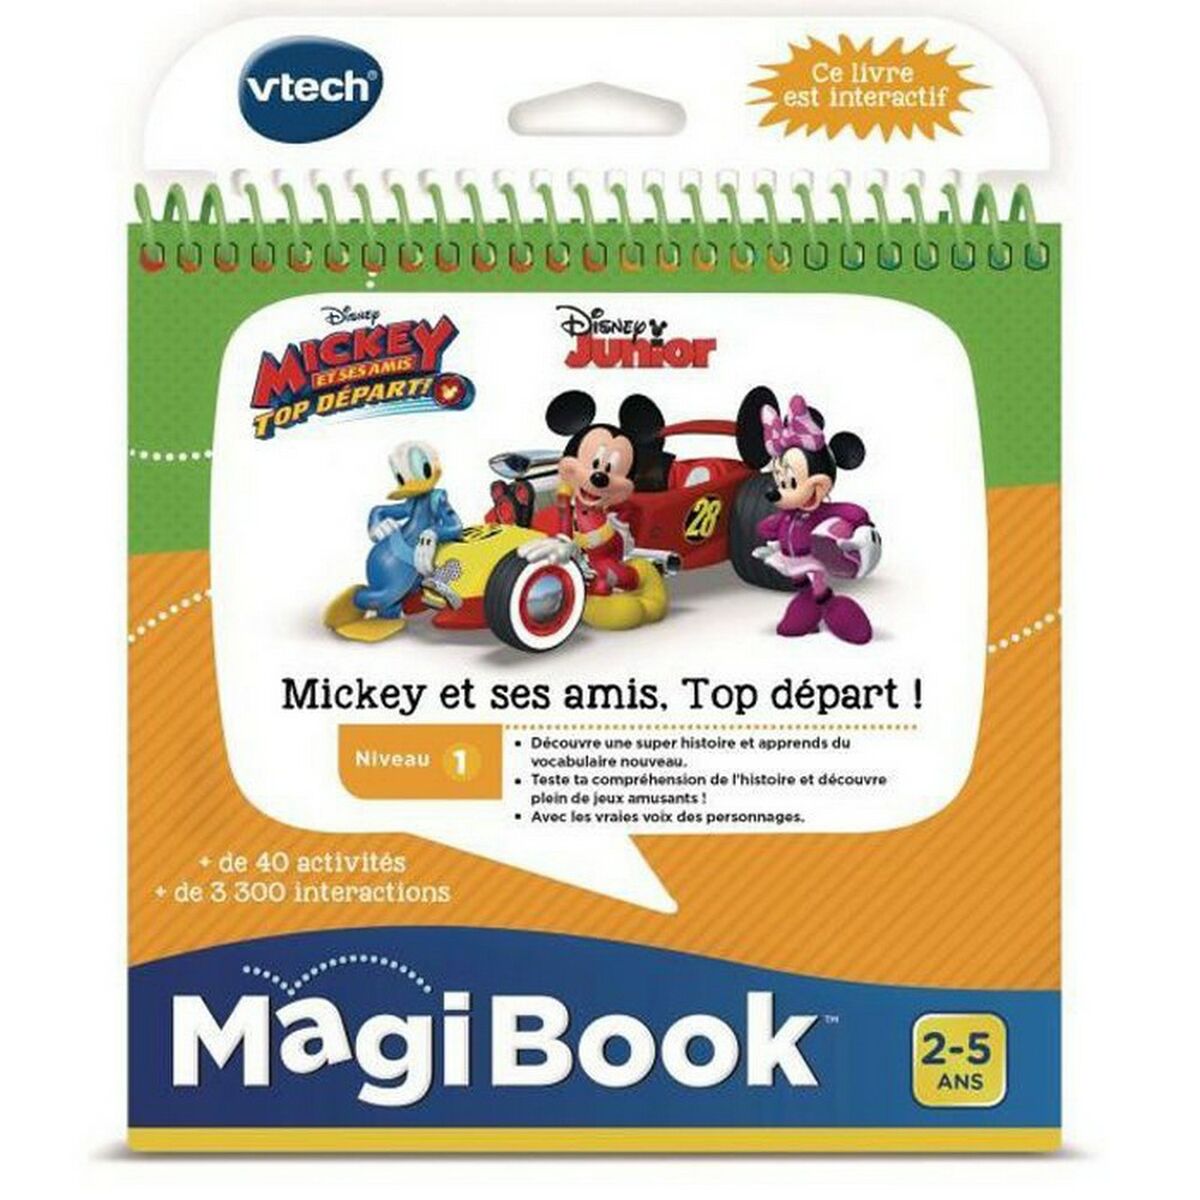 Livre interactif pour enfants Vtech MagiBook Français Mickey Mouse